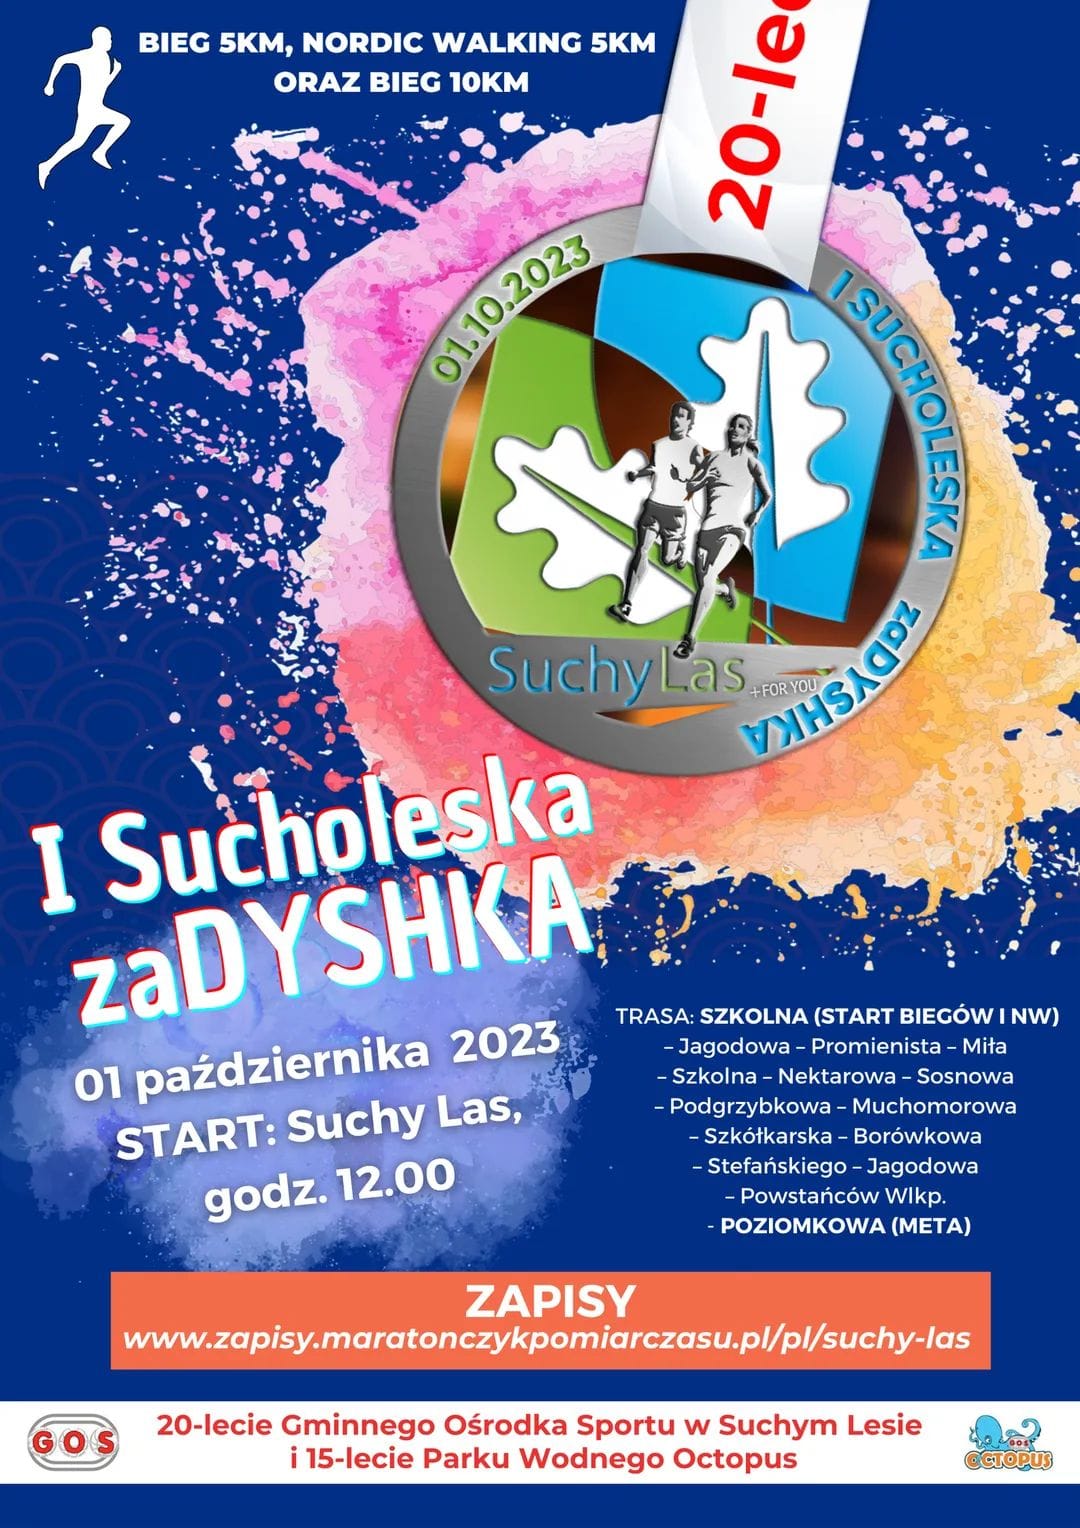 I Sucholeska zaDYSHKA - plakat informacyjny